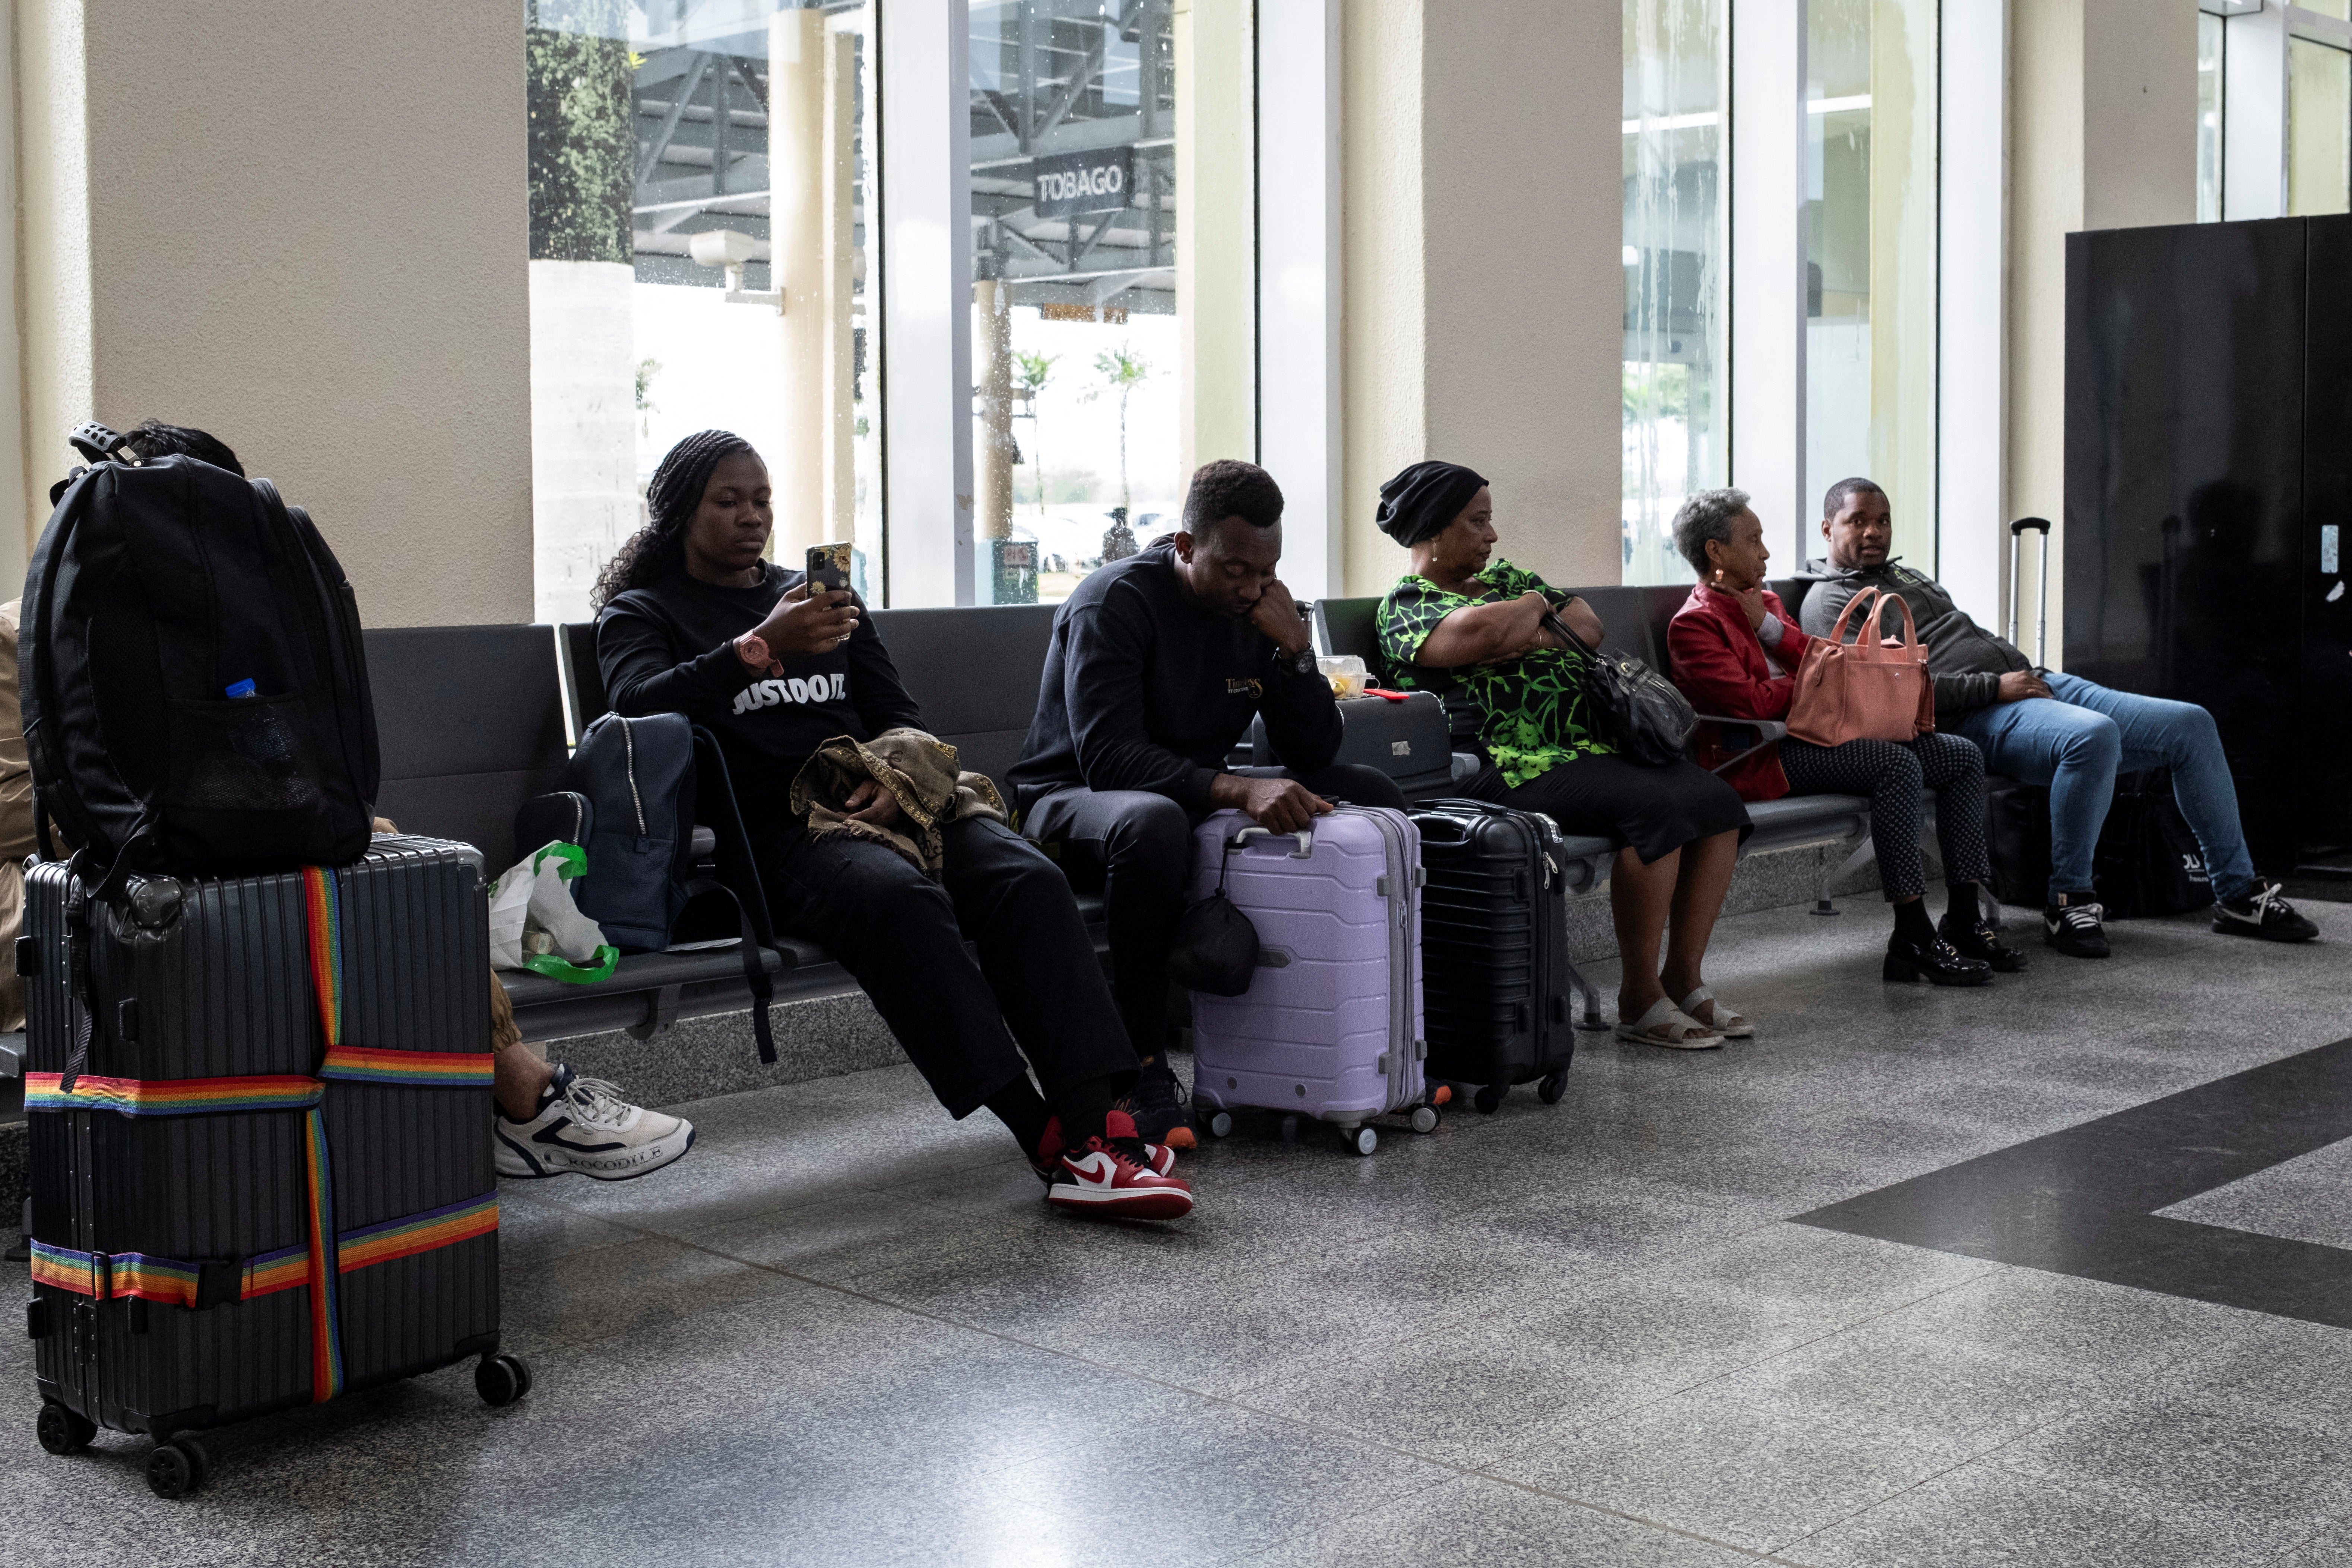 ينتظر الركاب في مطار بياركو الدولي حيث تأخرت الرحلات الجوية وأُلغيت بسبب إعصار بريل